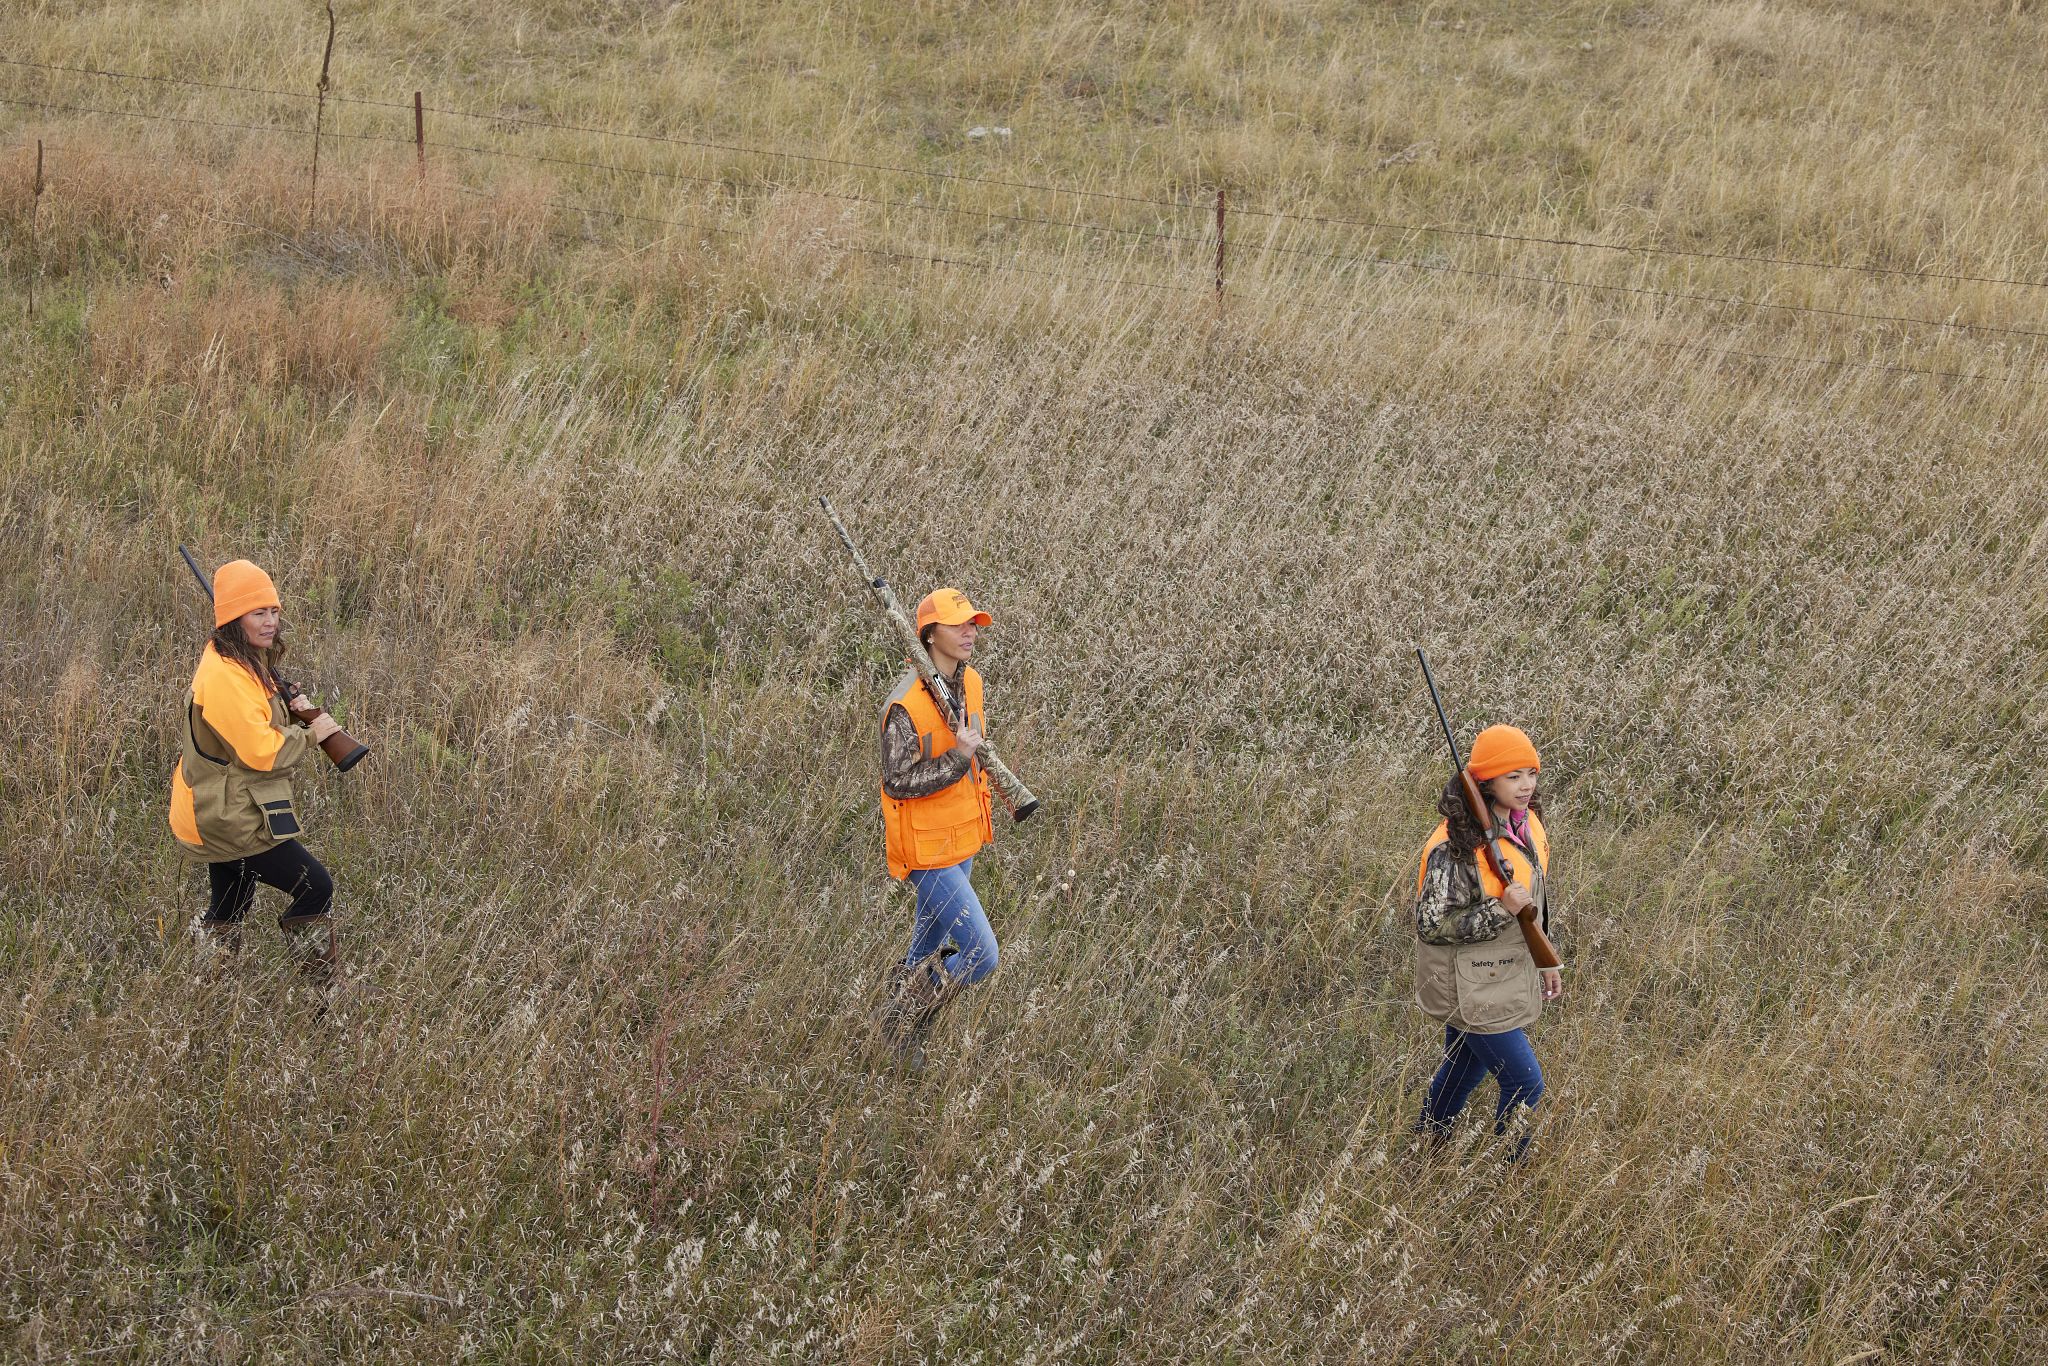 Three female hunters wearing blaze orange walking in a field